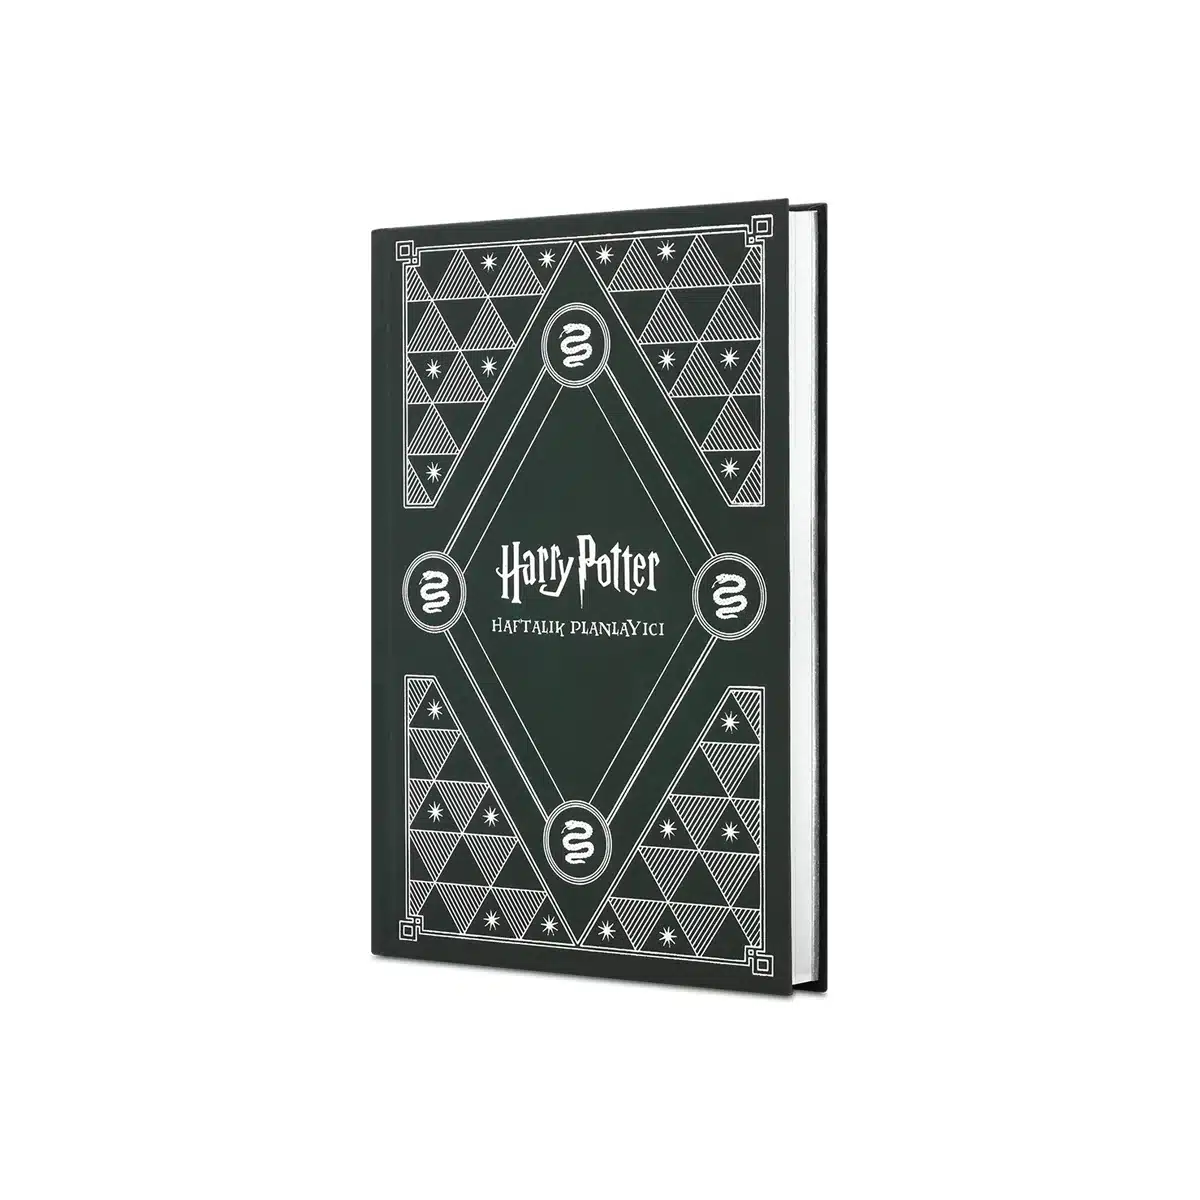 Sihir Dükkanı - Tüm Harry Potter Ürünleri